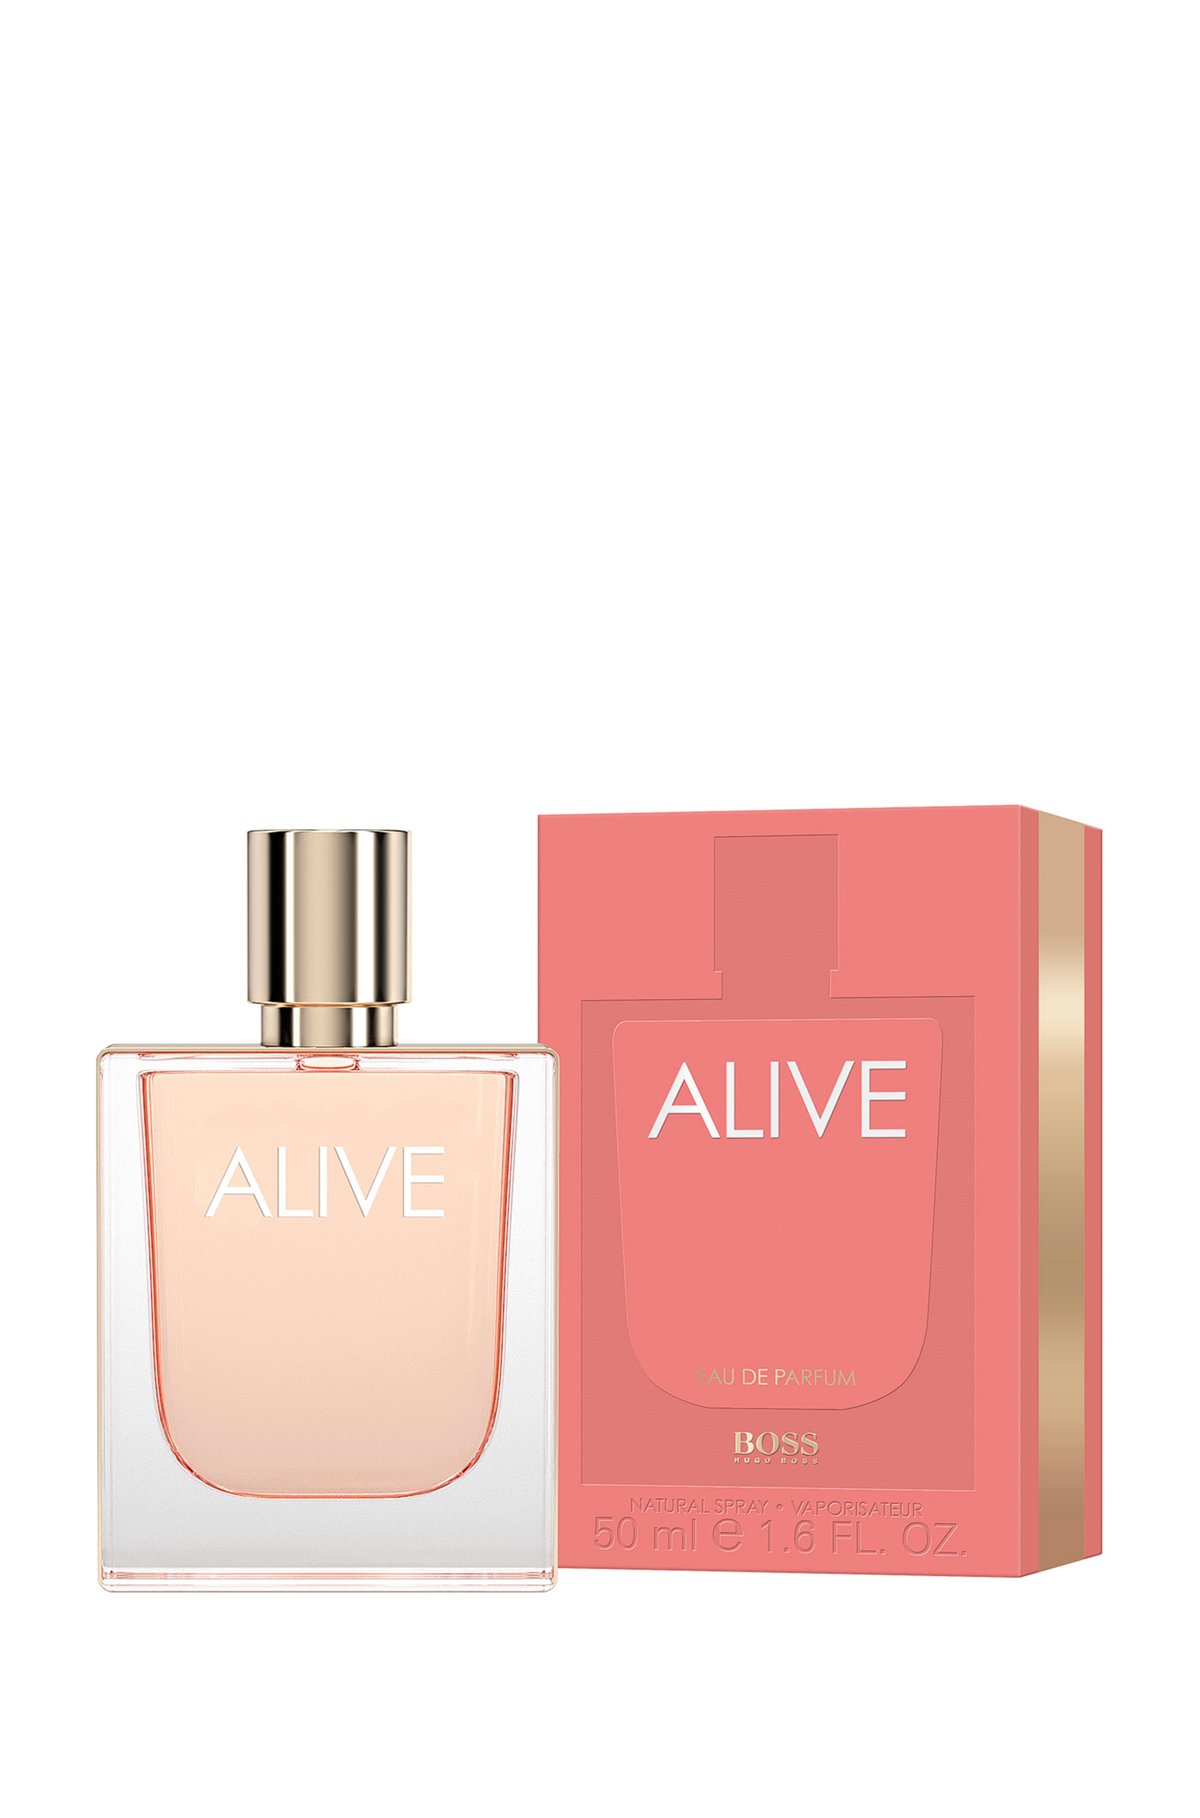 BOSS Alive Eau de Parfum 50 ml, Assorted-Pre-Pack